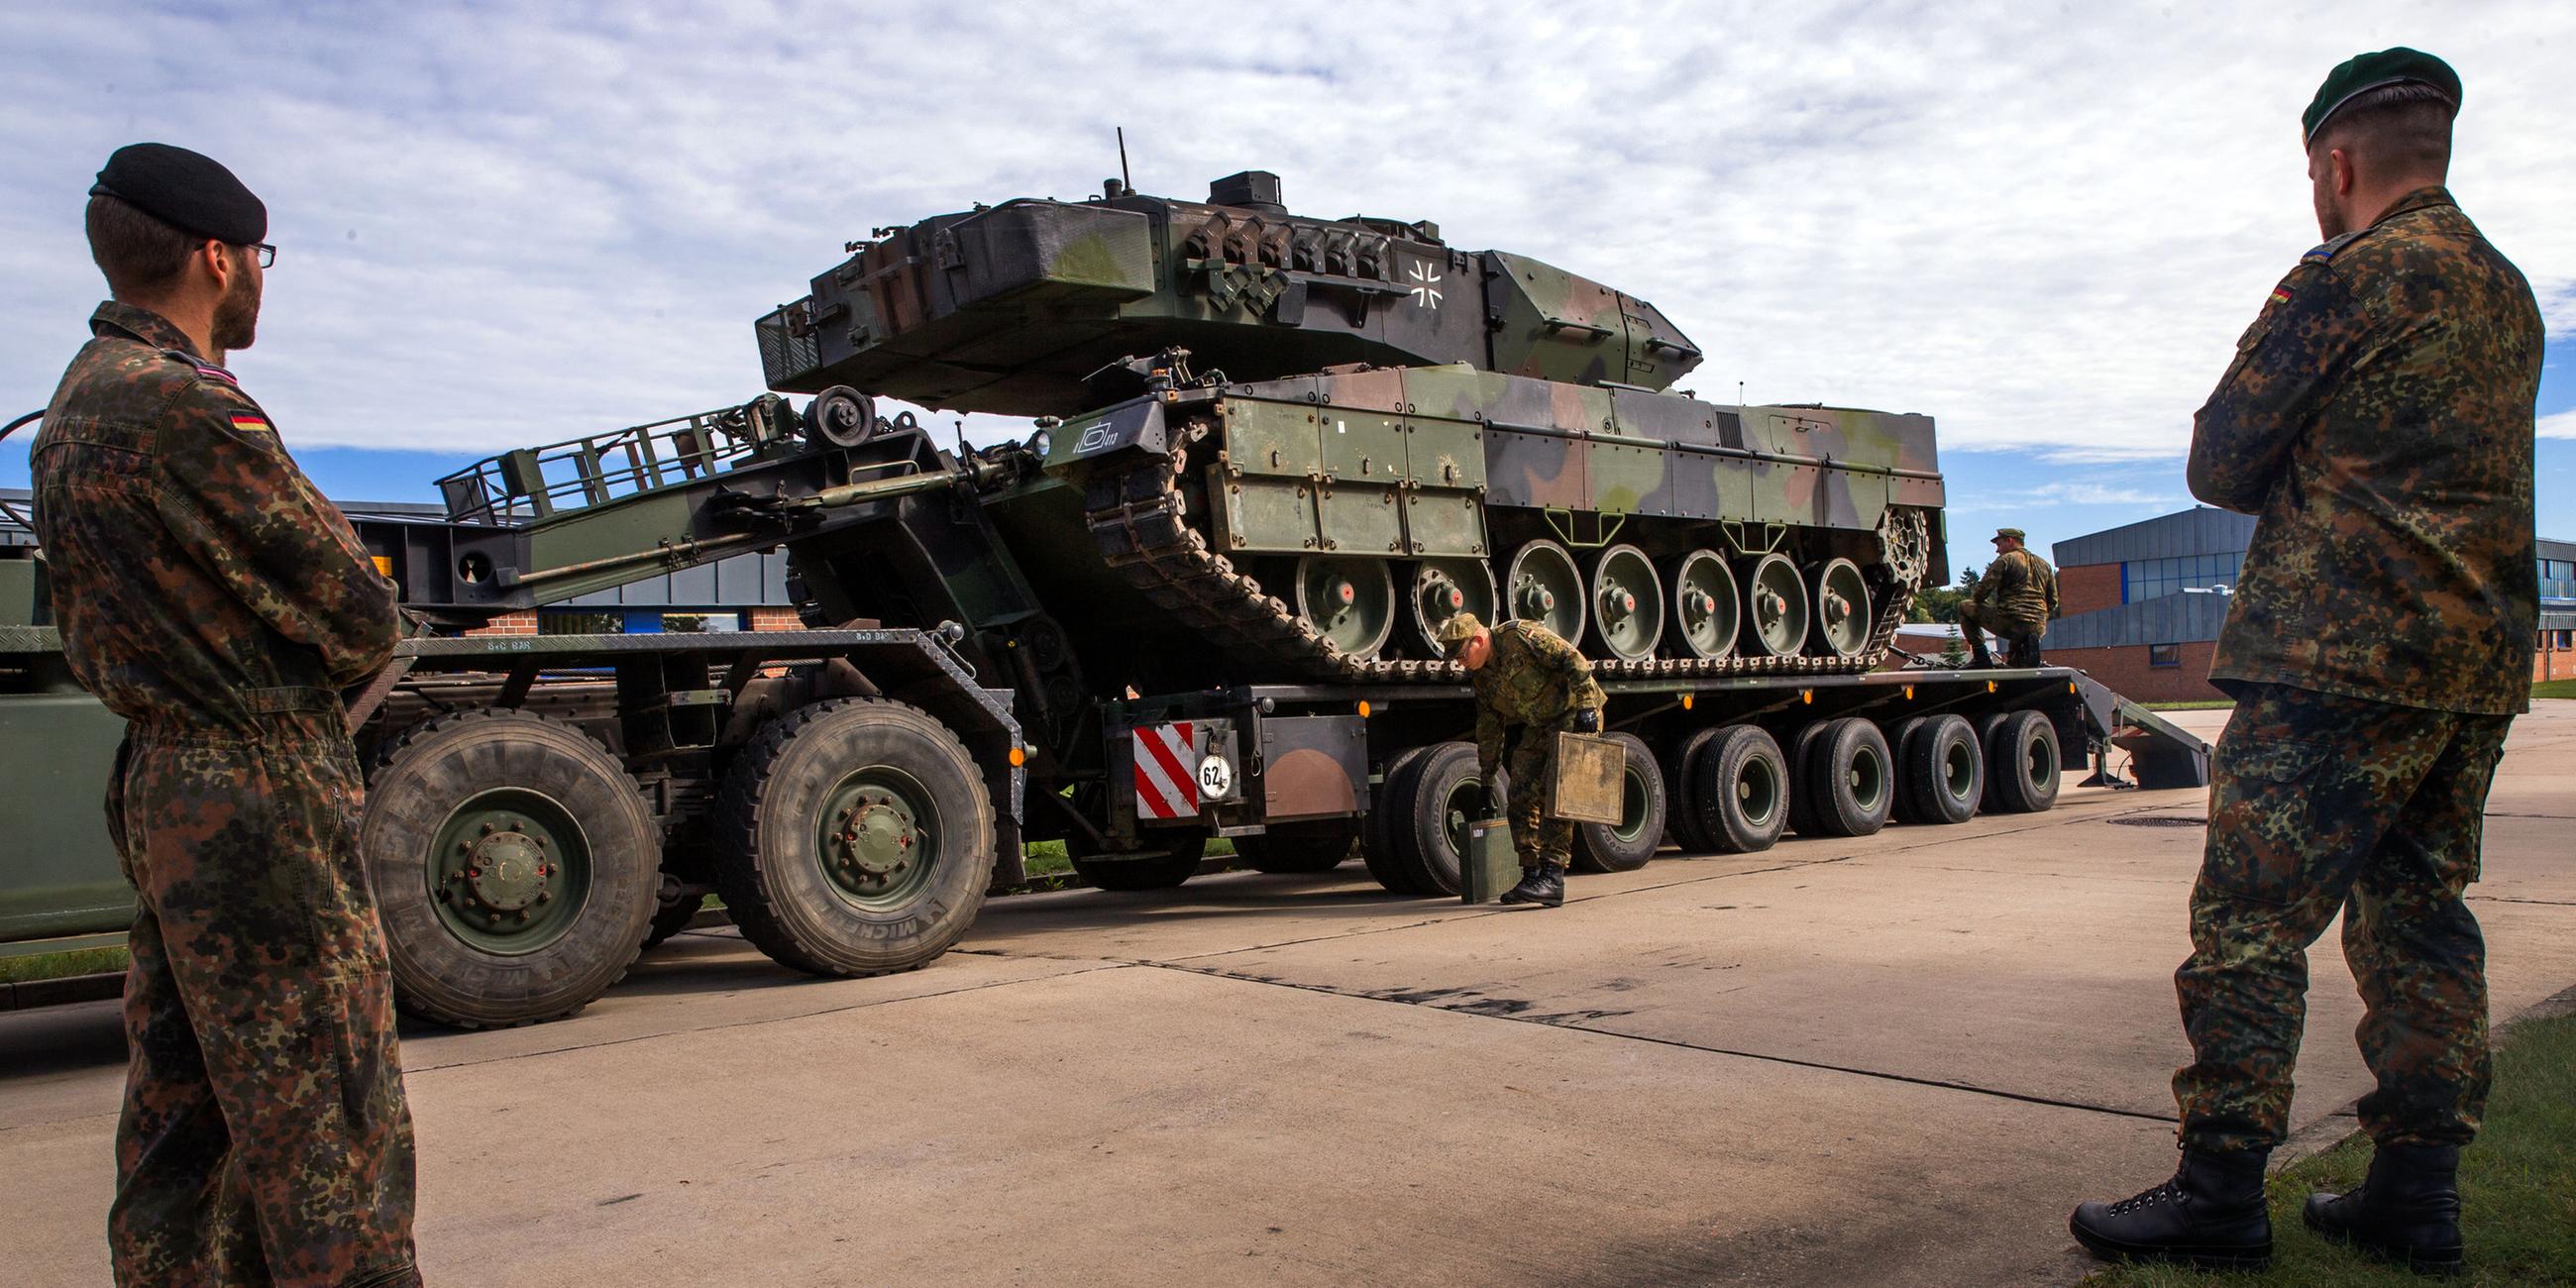 Panzer des Typs Leopard 2 wird für den Transport verladen